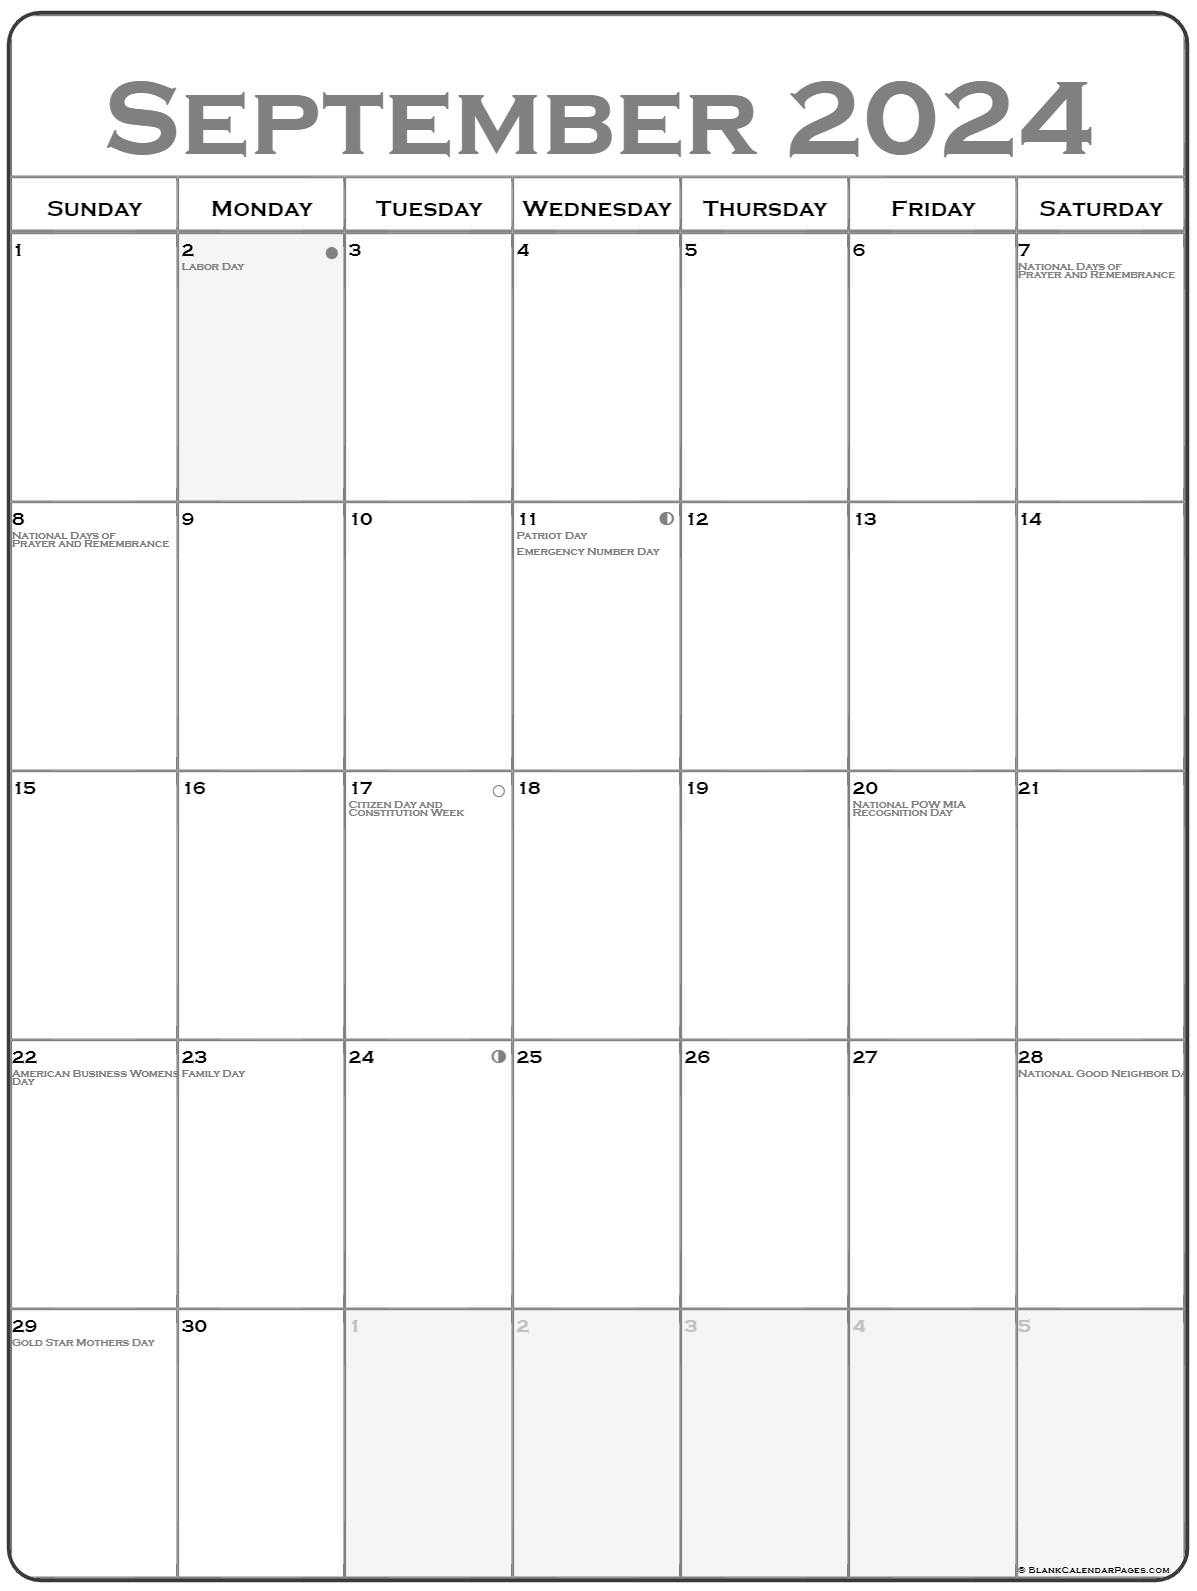 blank-september-2023-calendar-get-calendar-2023-update